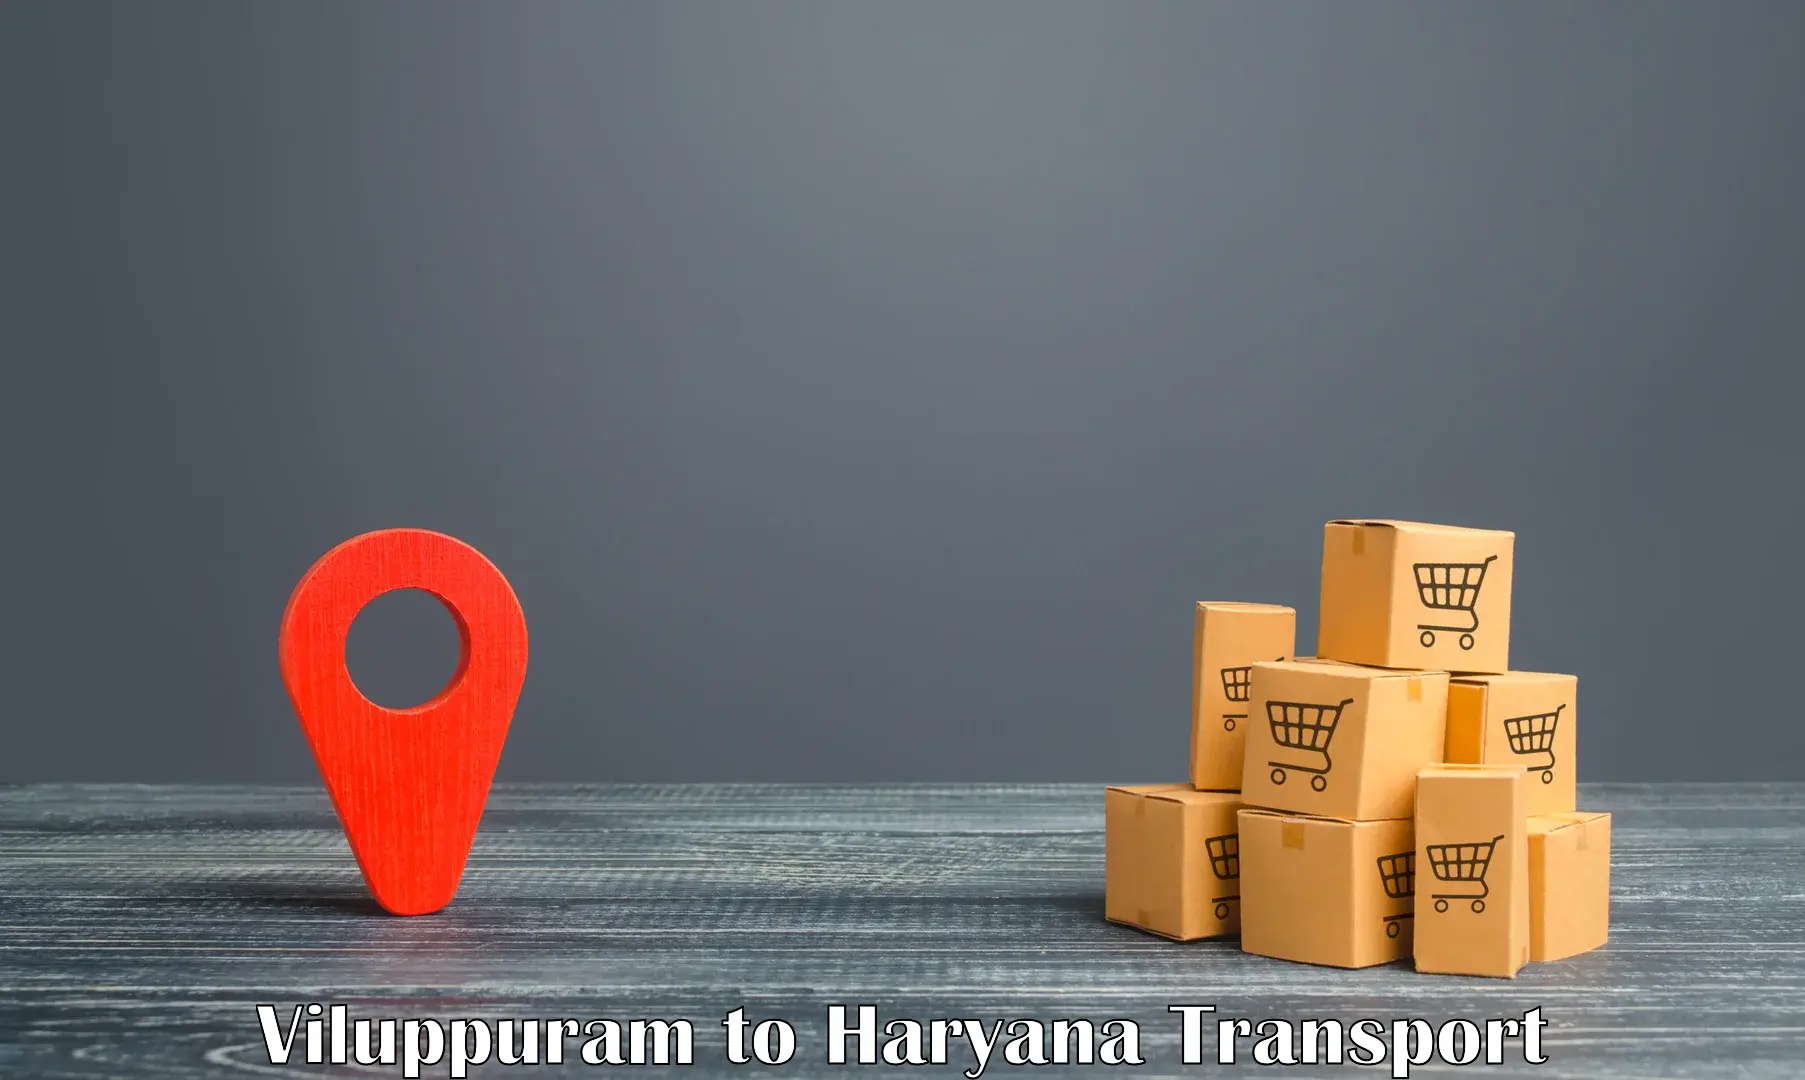 Container transport service Viluppuram to Rewari